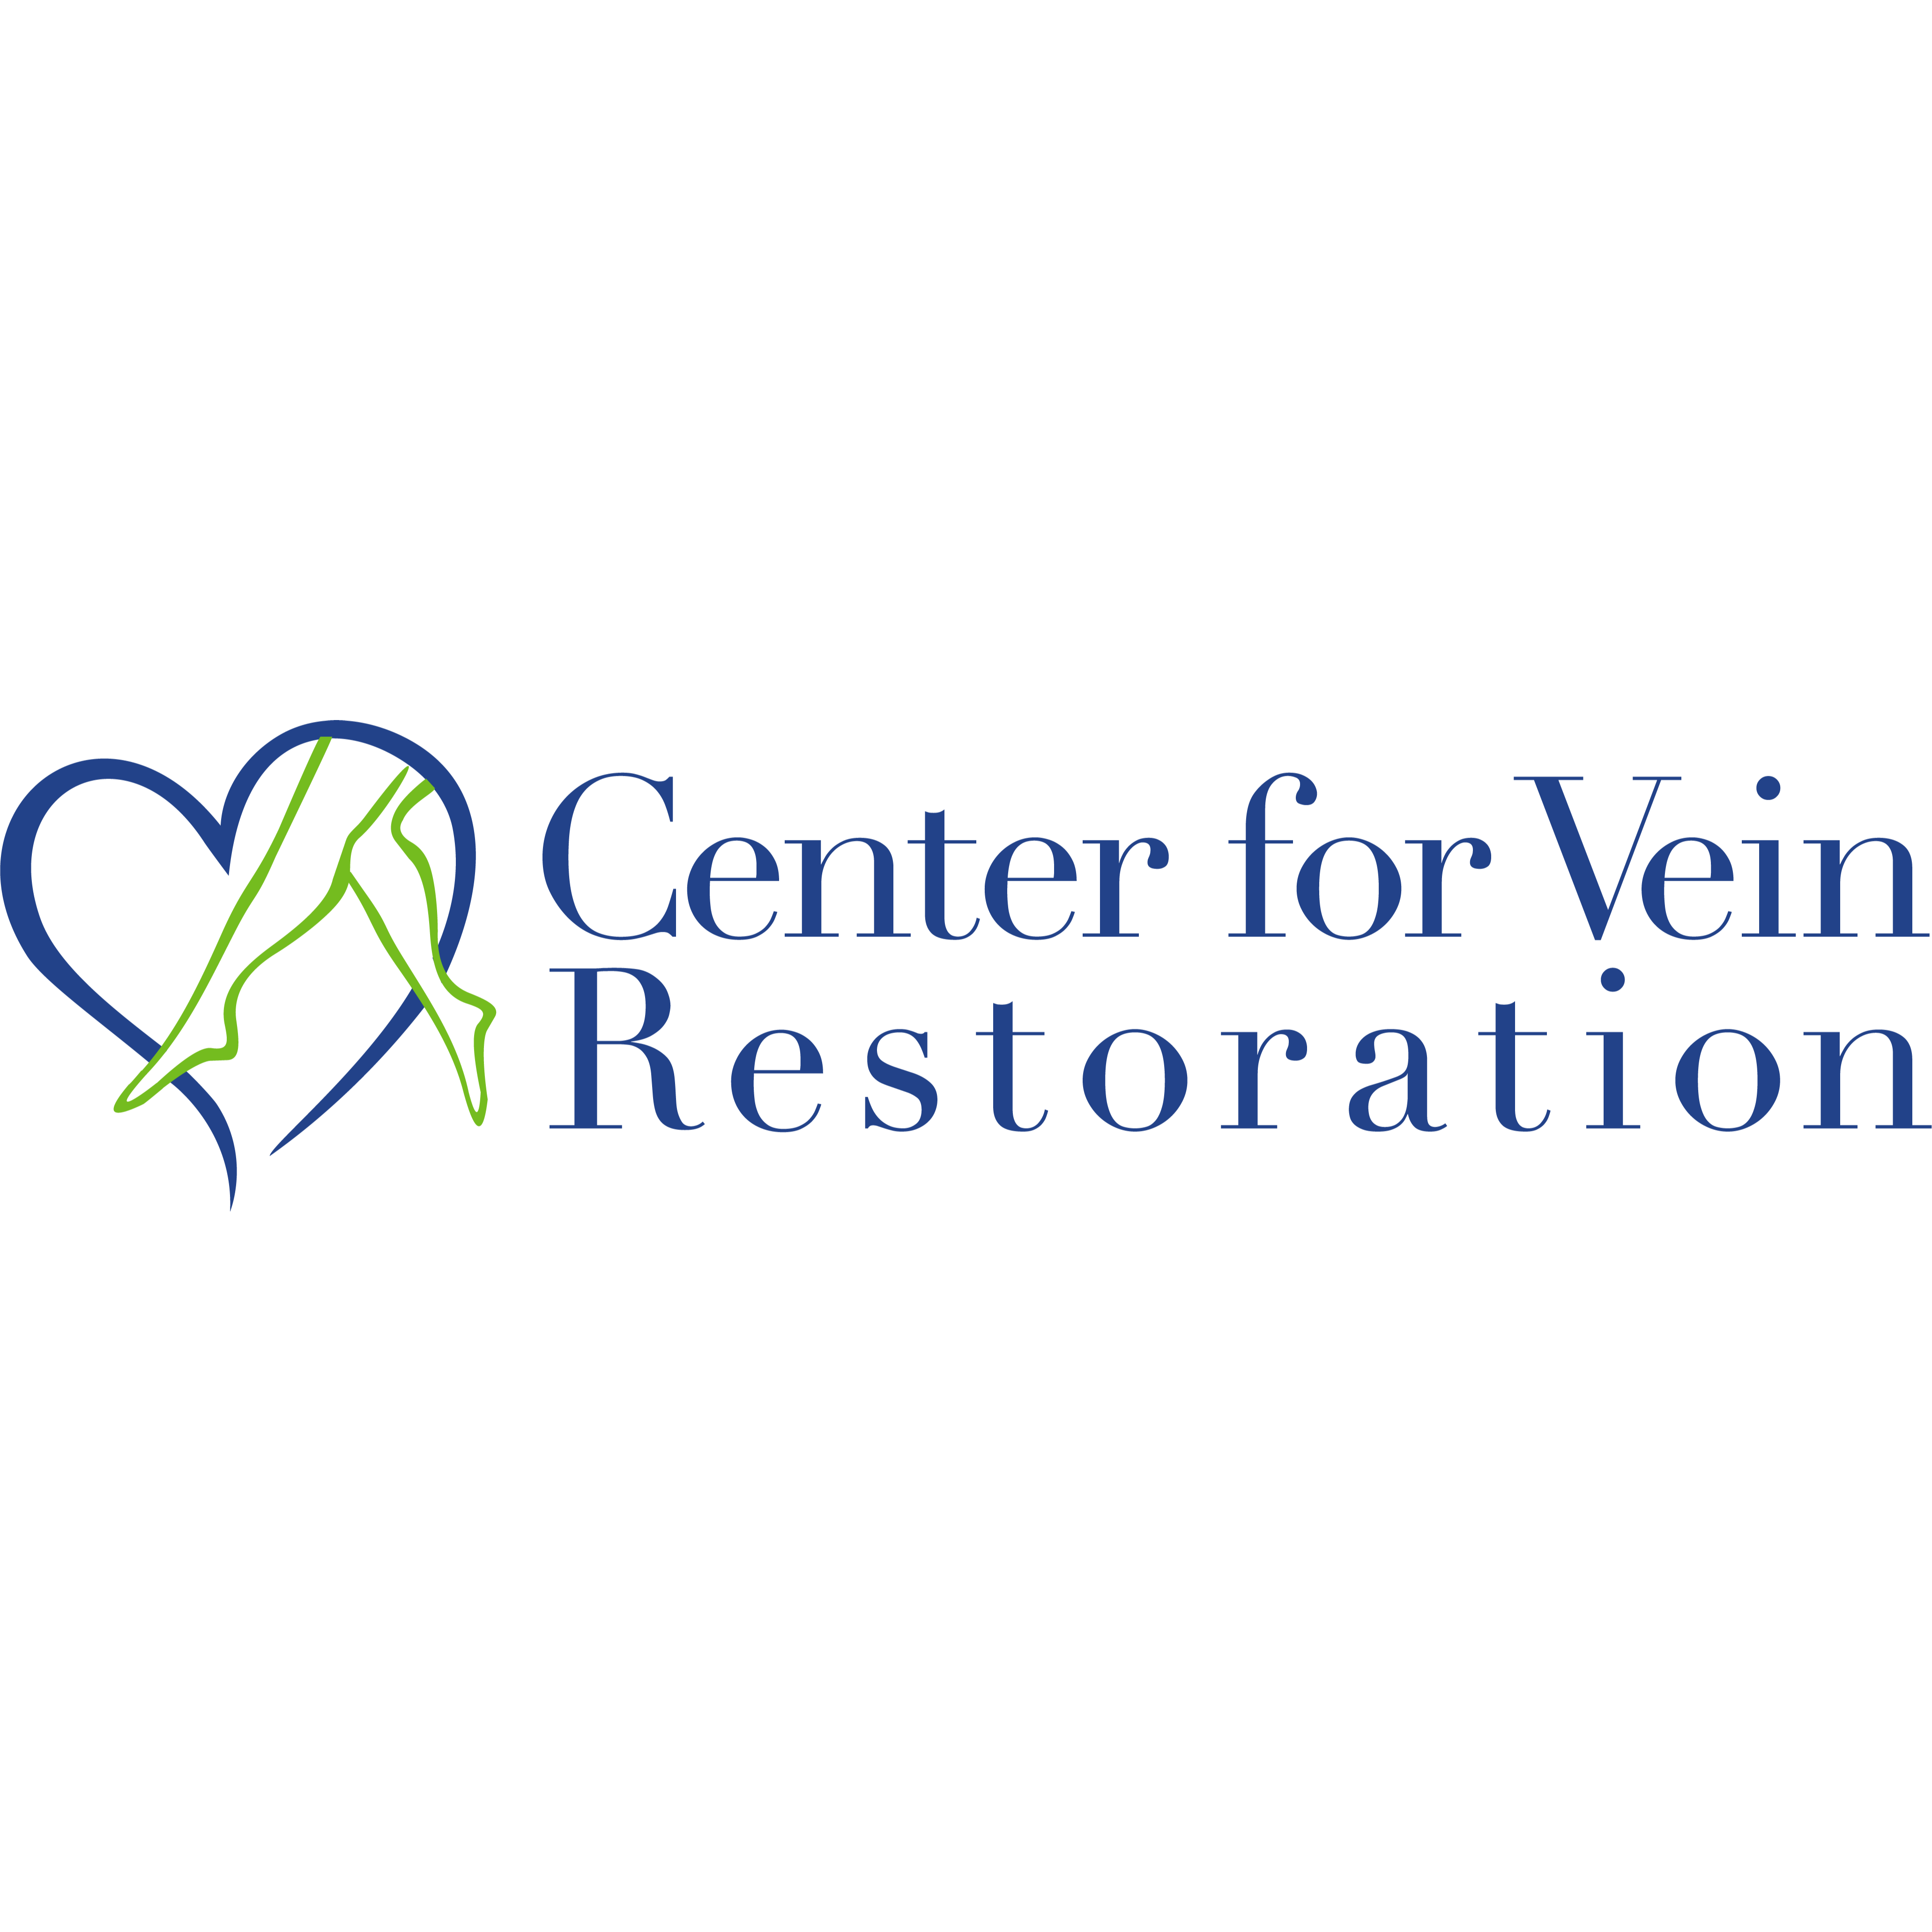 Center for Vein Restoration | Dr. Keith Nichols - Virginia Beach, VA 23454 - (757)269-3990 | ShowMeLocal.com